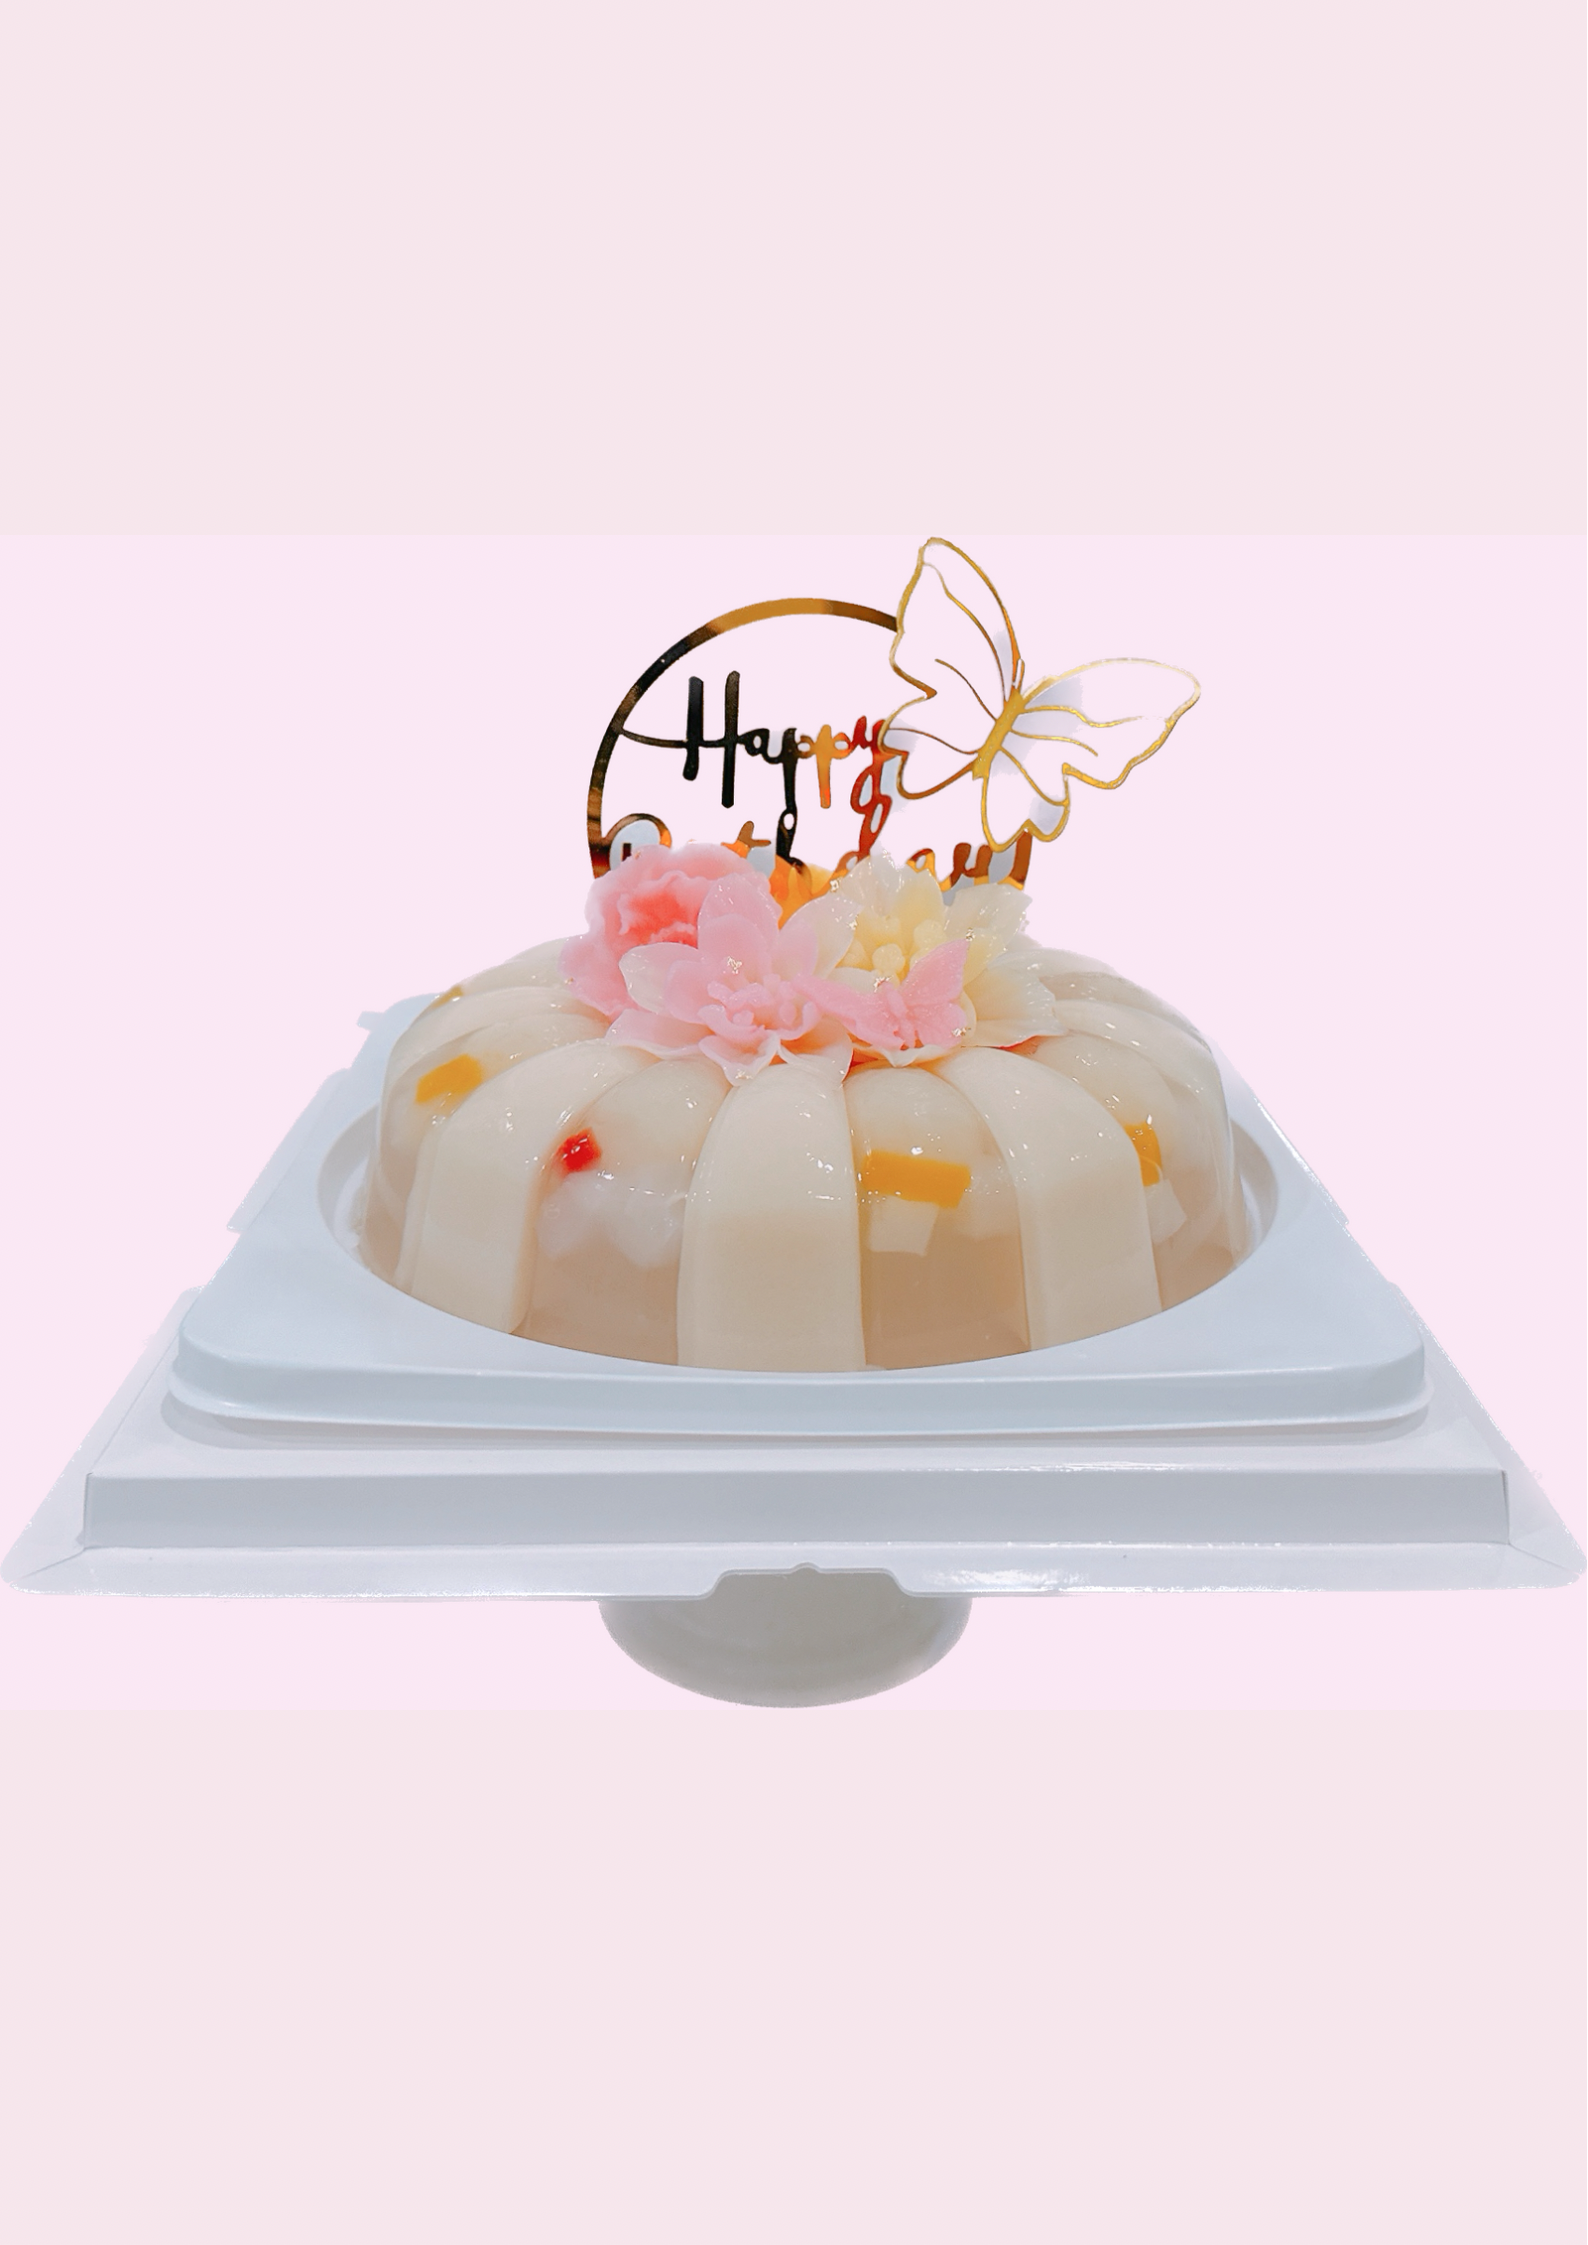 Jelly Fruit Cake - YouTube